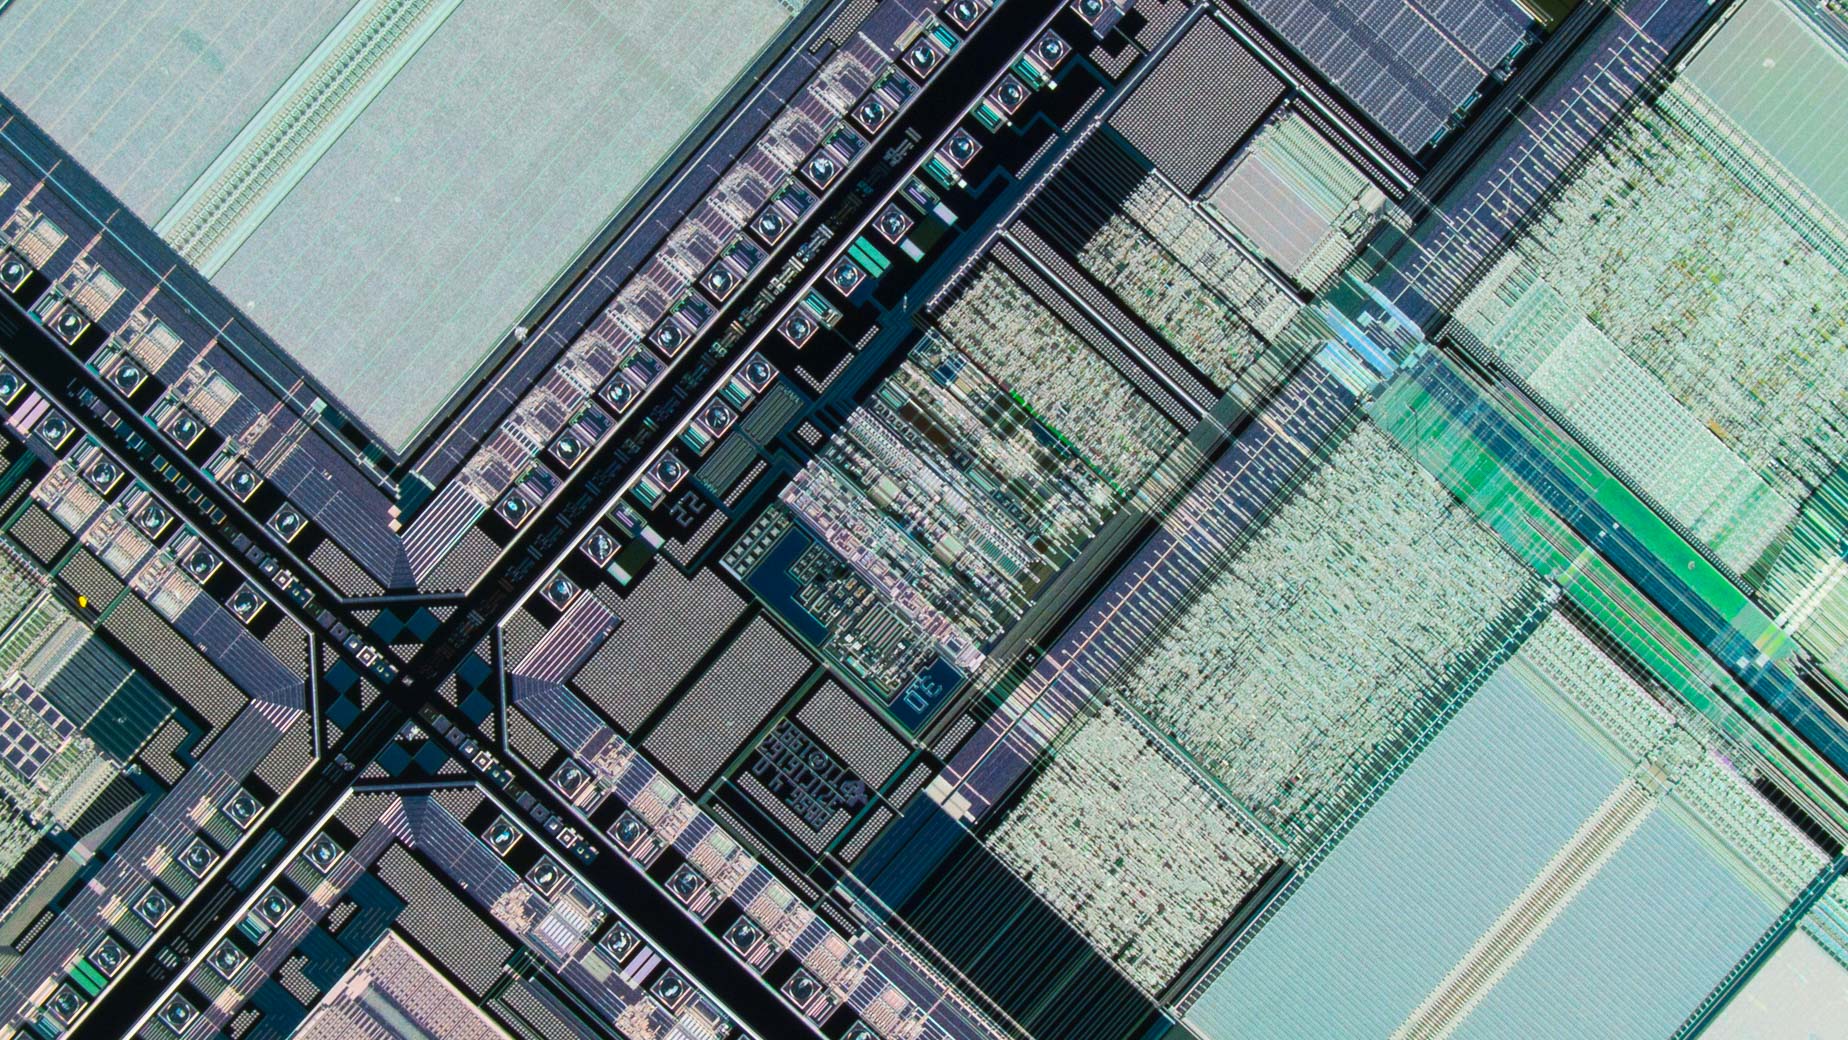 Mikrofotografija mikroprocesorskog silikonskog wafer-a